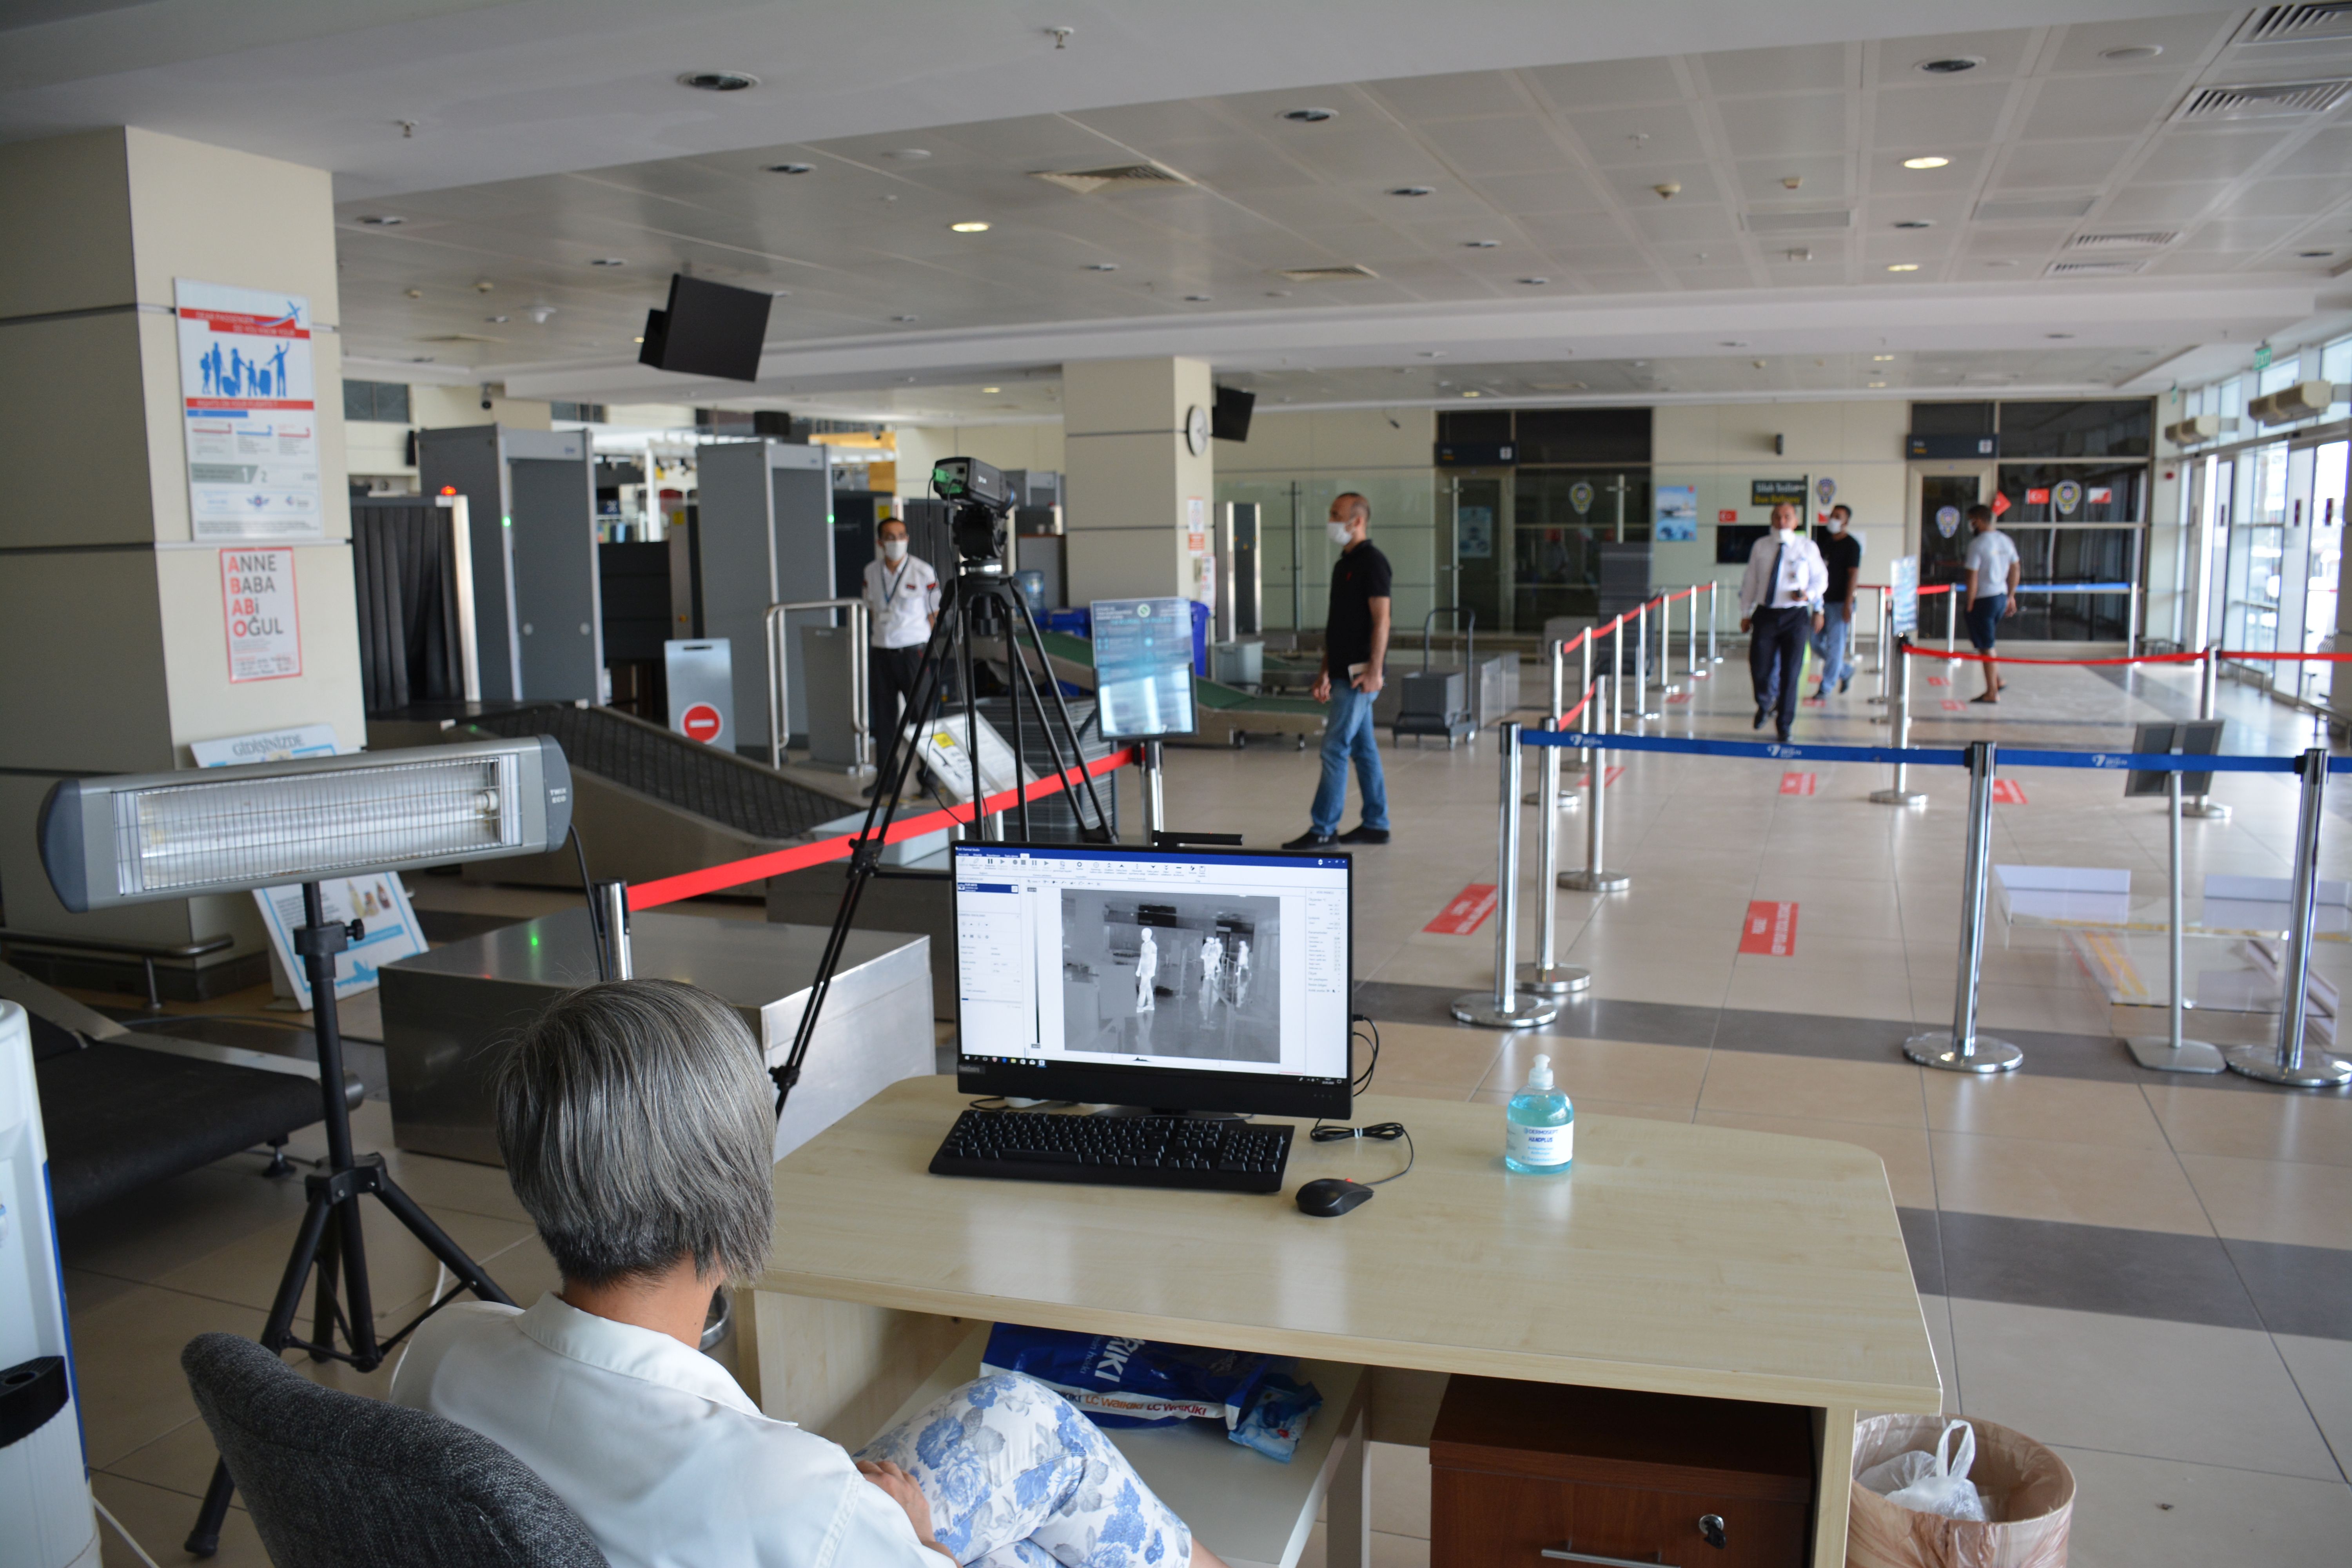 Fraport TAV Antalya Havalimanı “Havalimanı Sağlık Akreditasyonu”nun Tüm Beklentilerini Karşılayarak ACI Pandemi Sertifikasını Aldı.